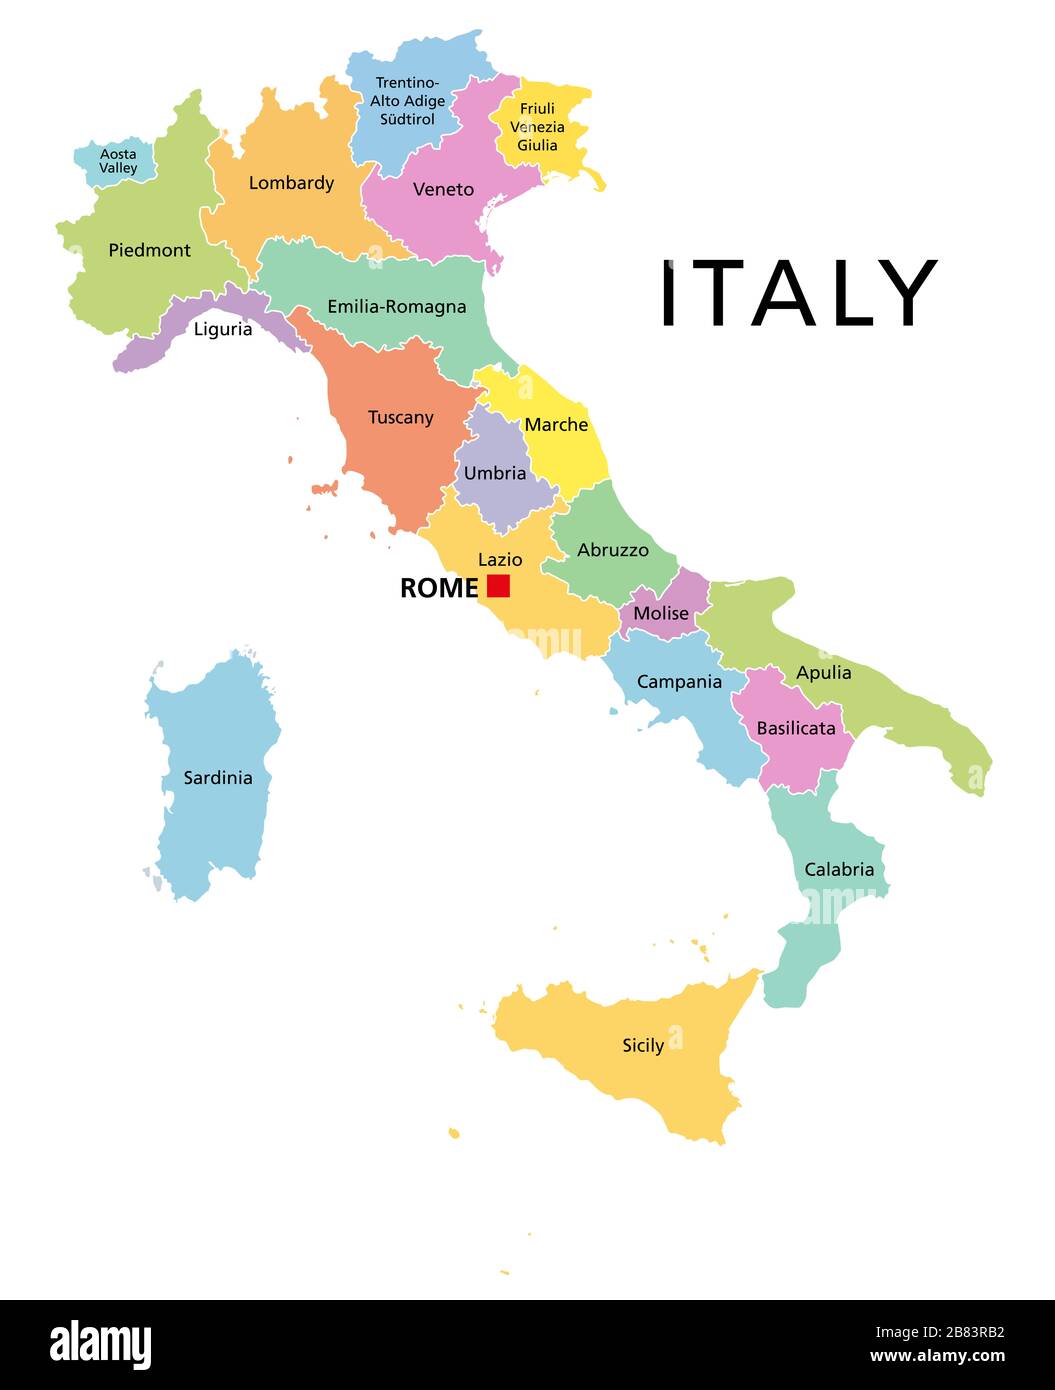 Italien, politische Karte mit mehrfarbigen Verwaltungseinteilungen. Italienische Republik mit der Hauptstadt Rom, ihren 20 Regionen und Grenzen. Englische Kennzeichnung. Stockfoto